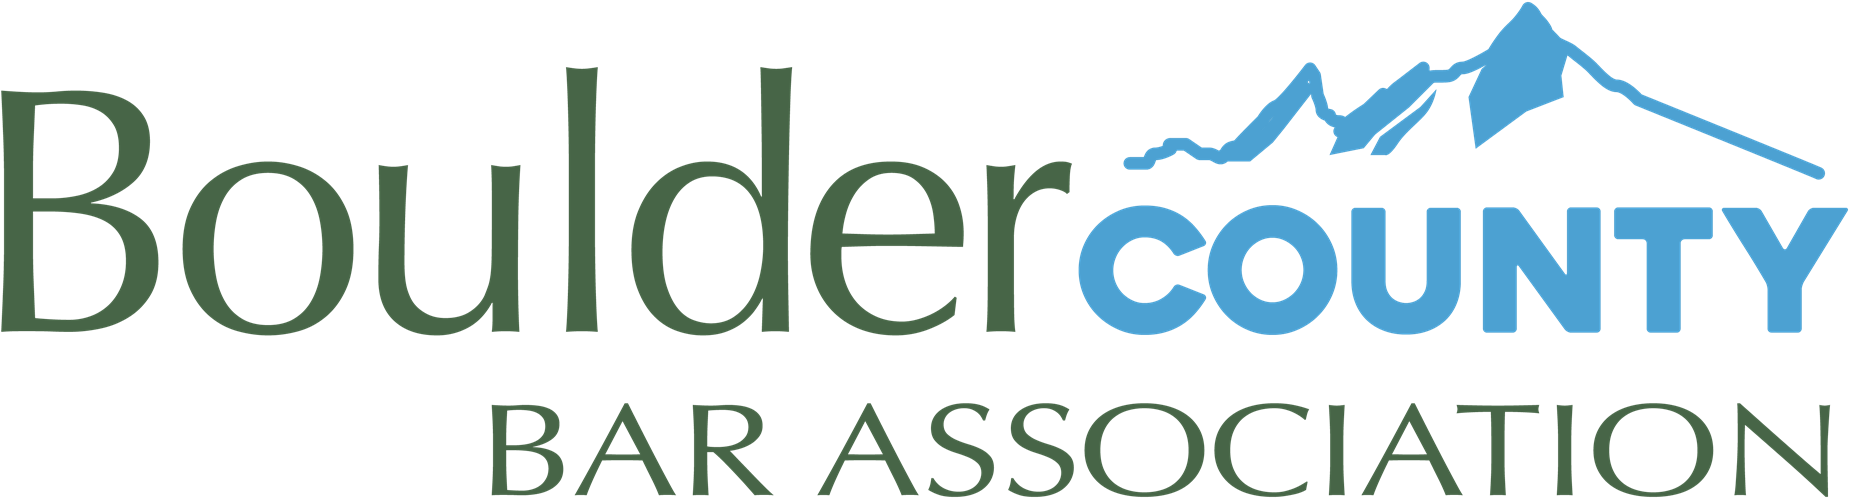 Boulder County Bar Association Logo PNG